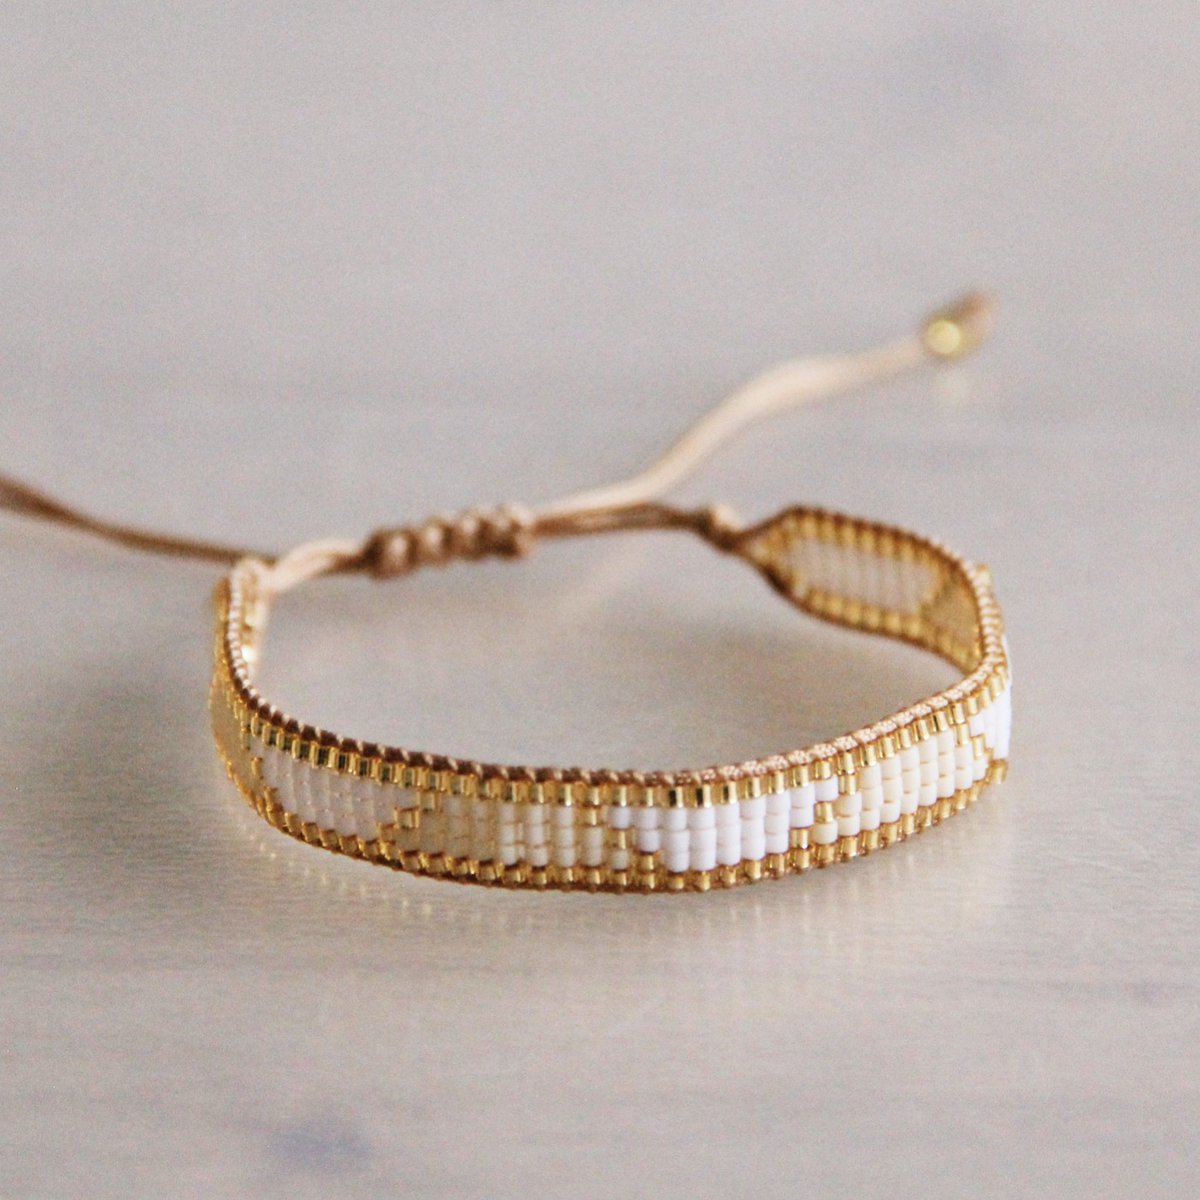 SS101: Weaving bracelet white/champagne/gold